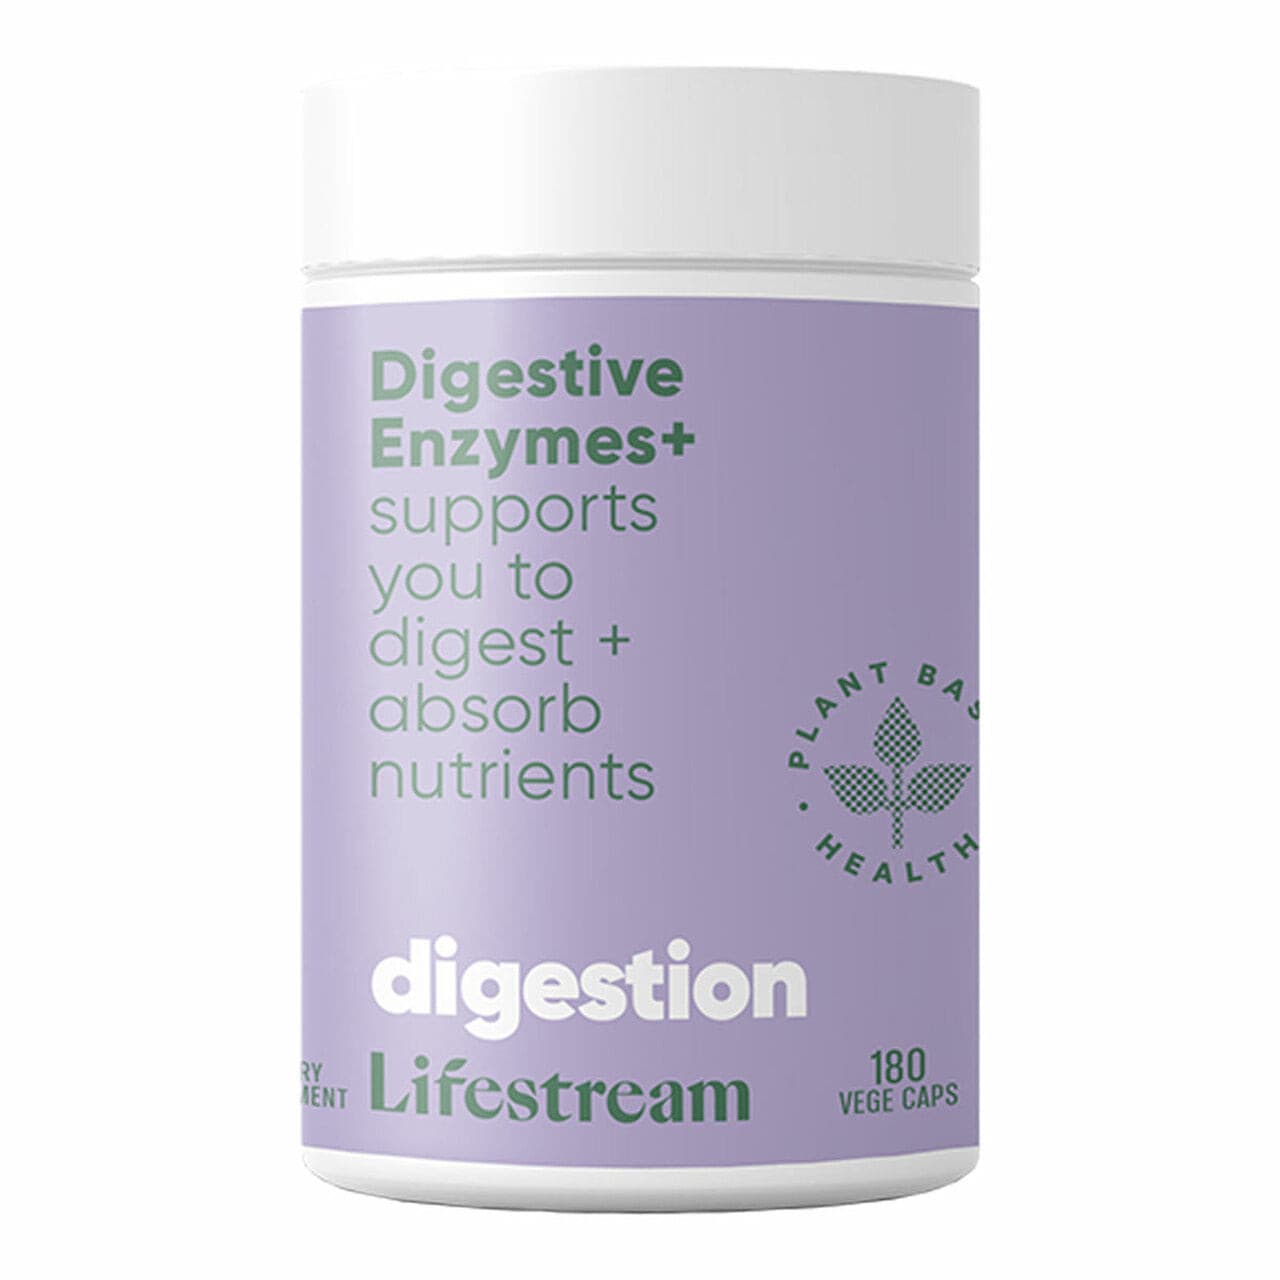 Lifestream Digestive Enzymes+.